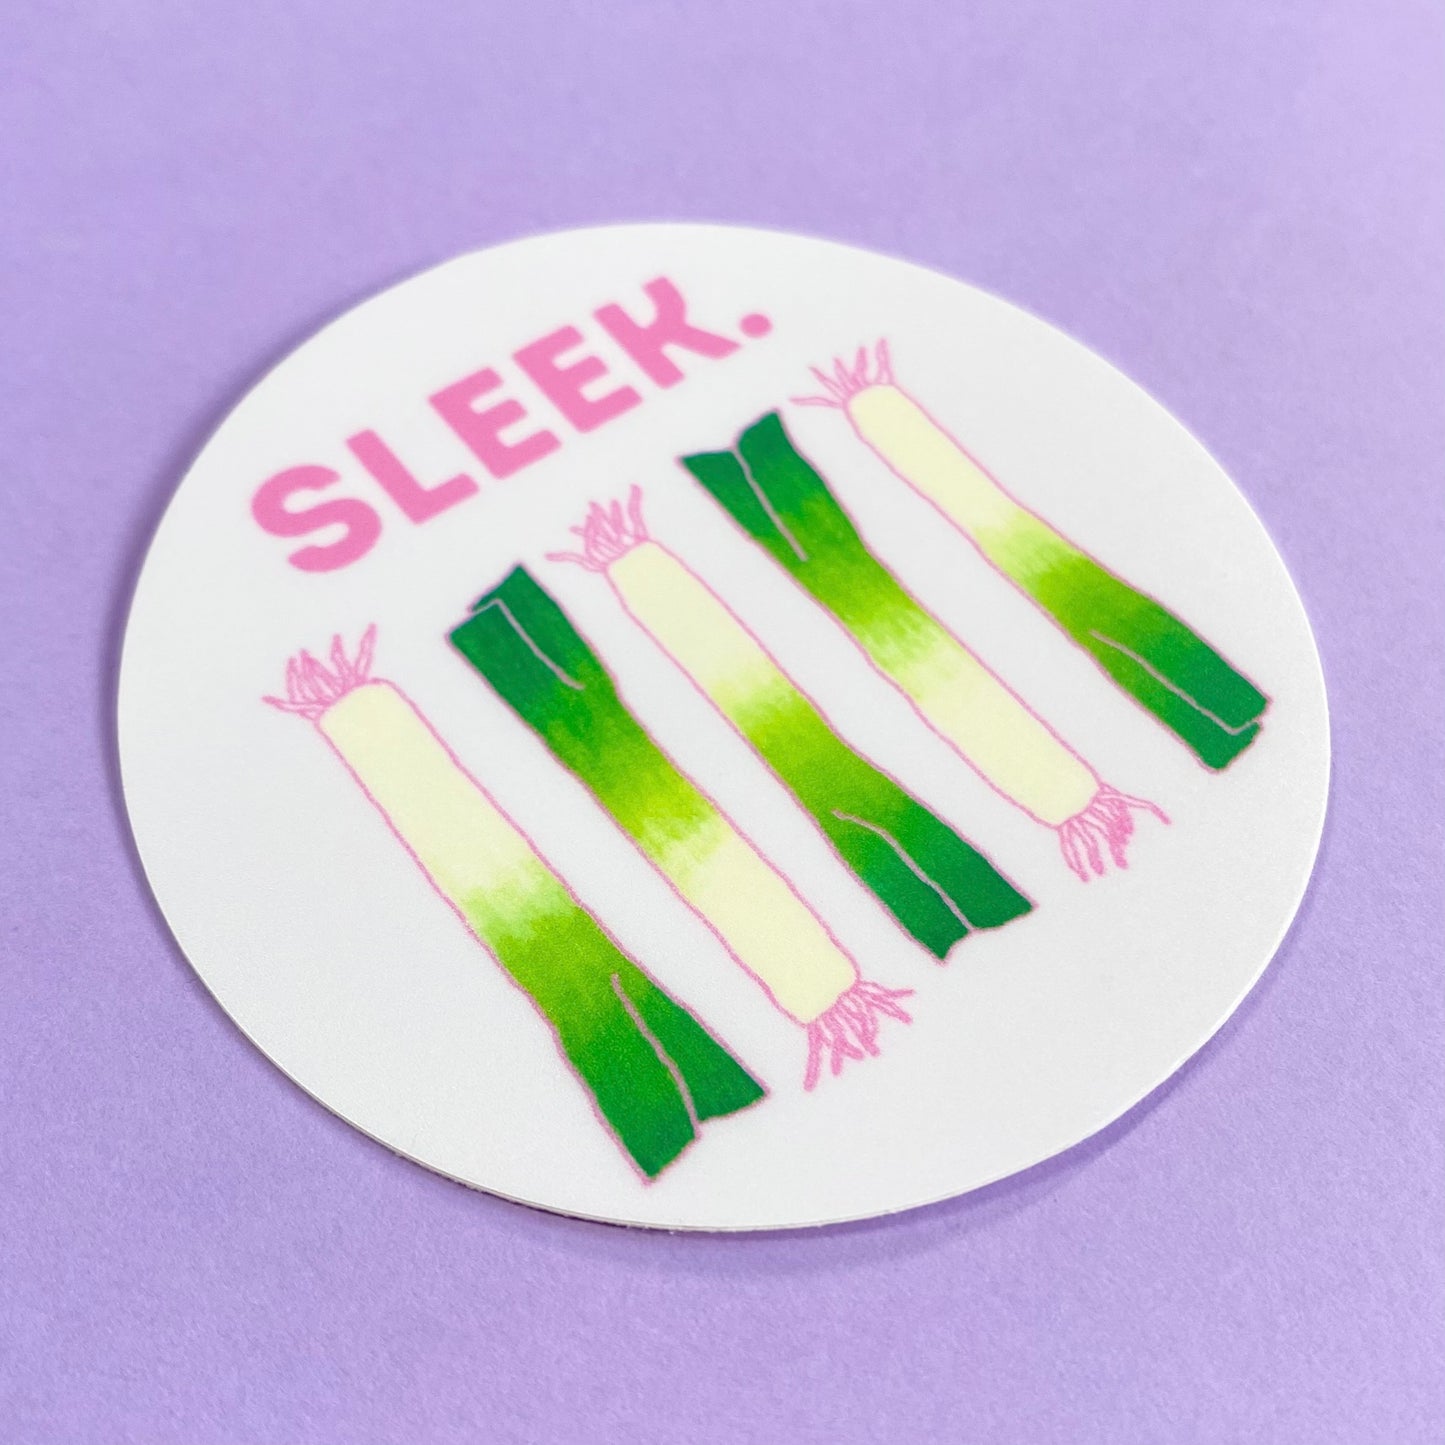 Sleek Leek Sticker